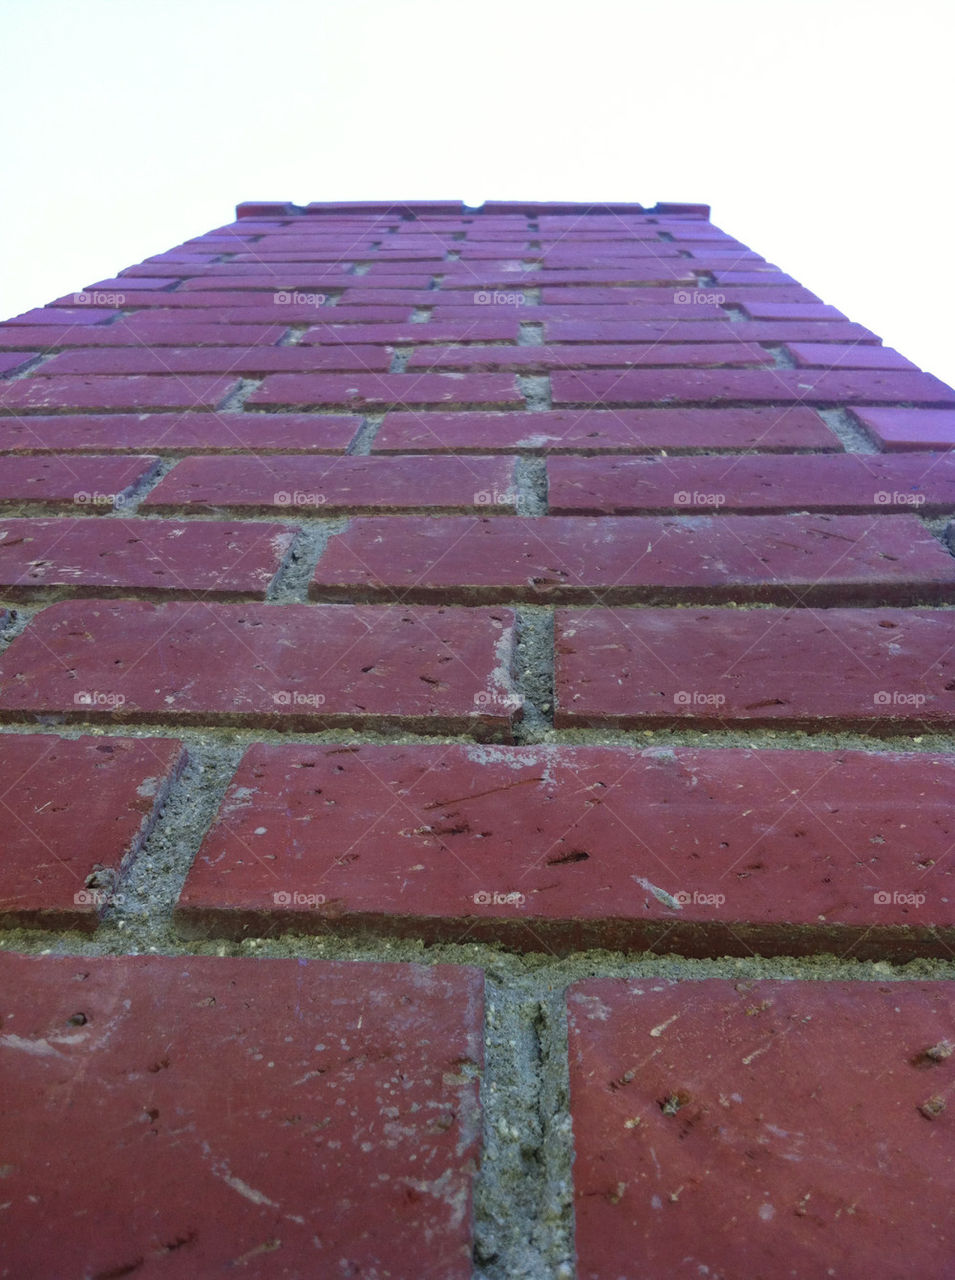 sky bricks stairway2heaven by blackpearl079